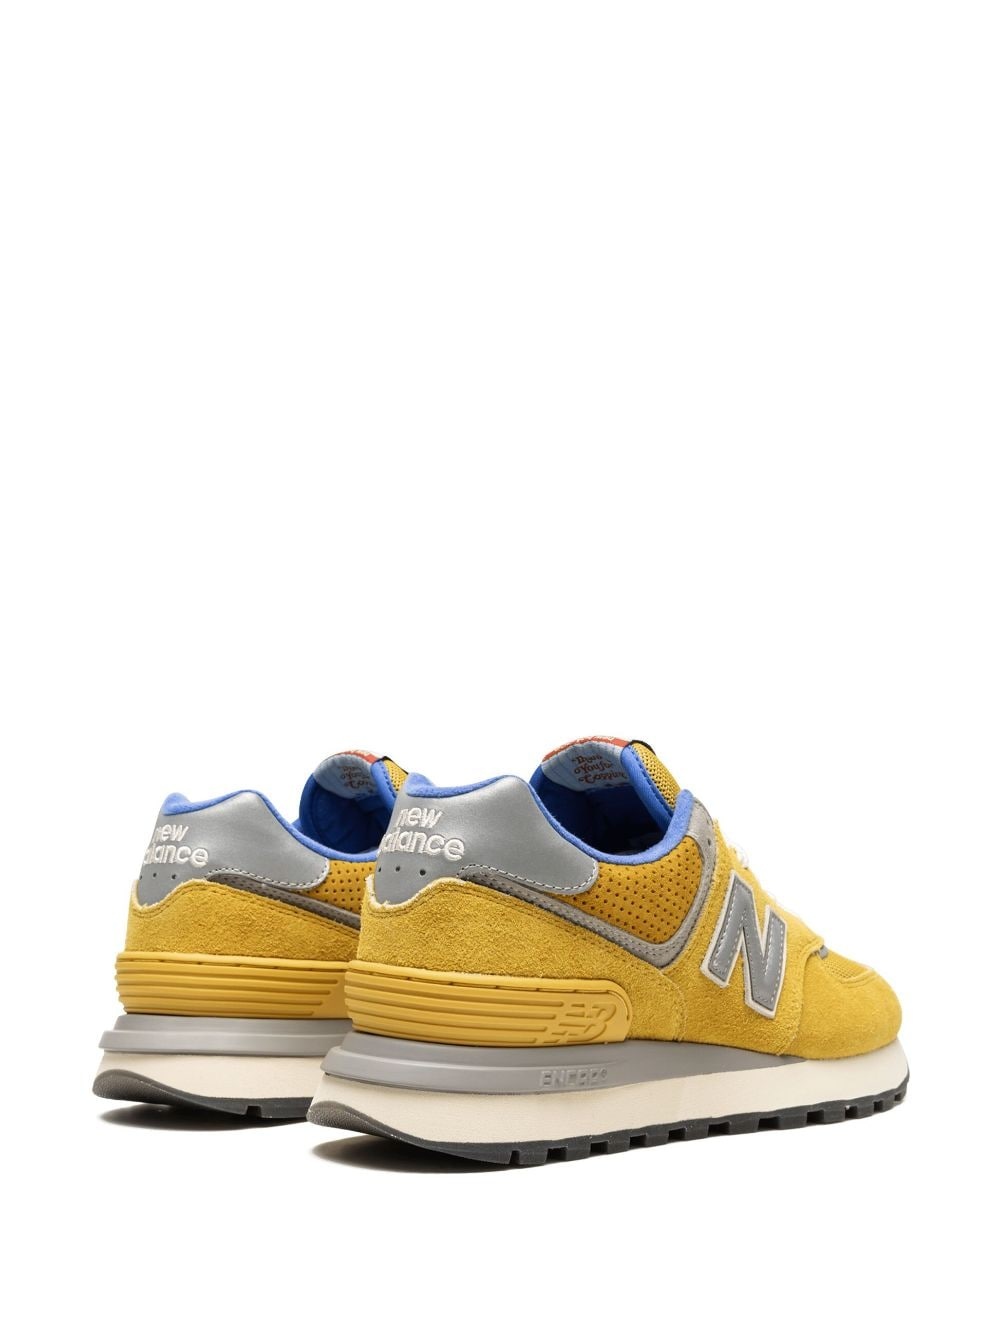 x Bodega 574 Legacy "Yellow" sneakers - 3